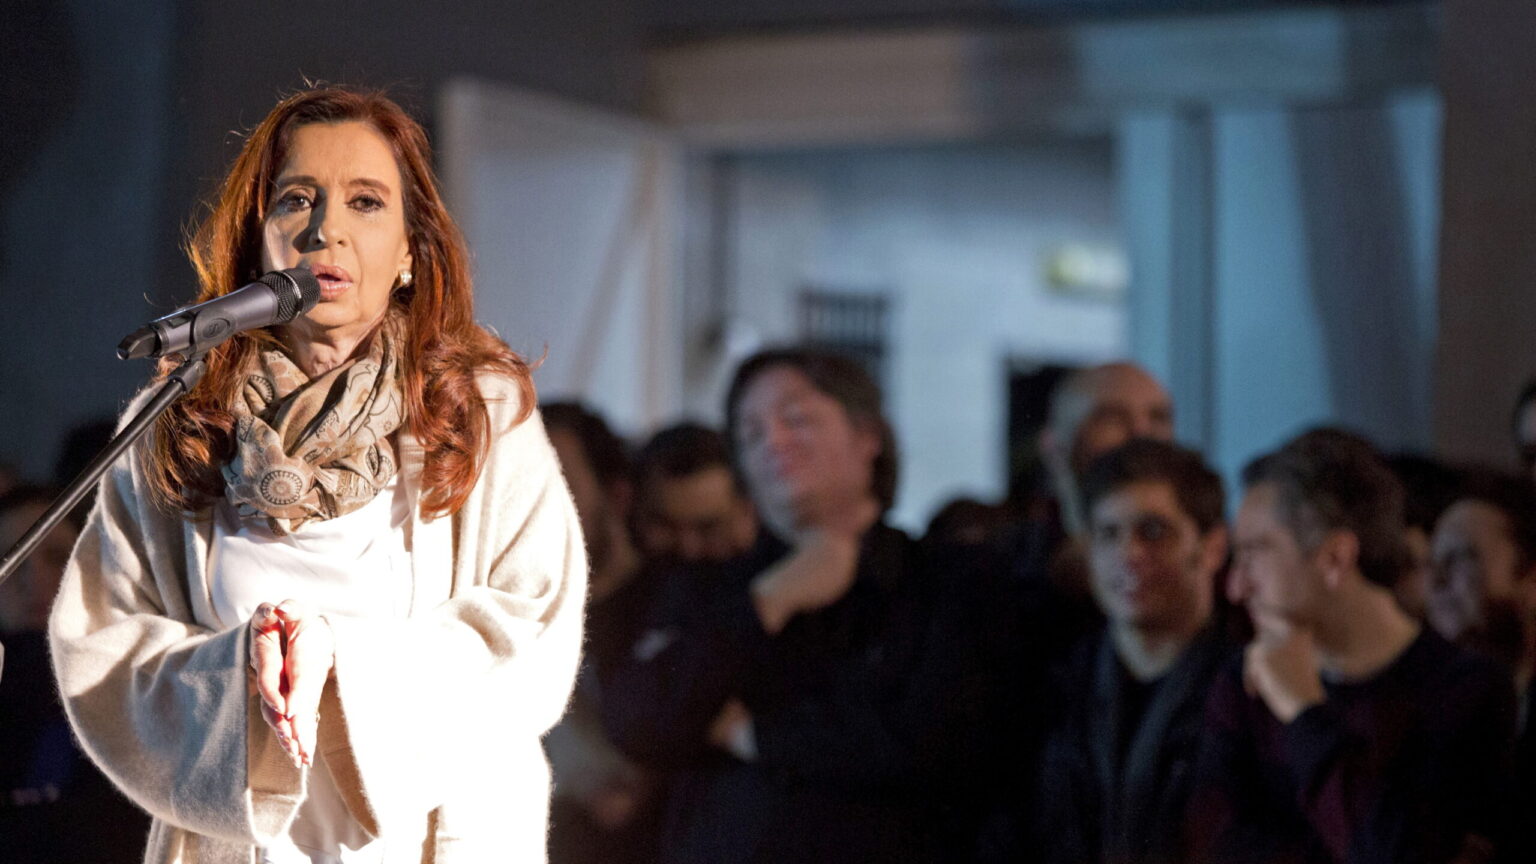 Atacan el despacho de Cristina Fernández de Kirchner durante unas protestas en Argentina